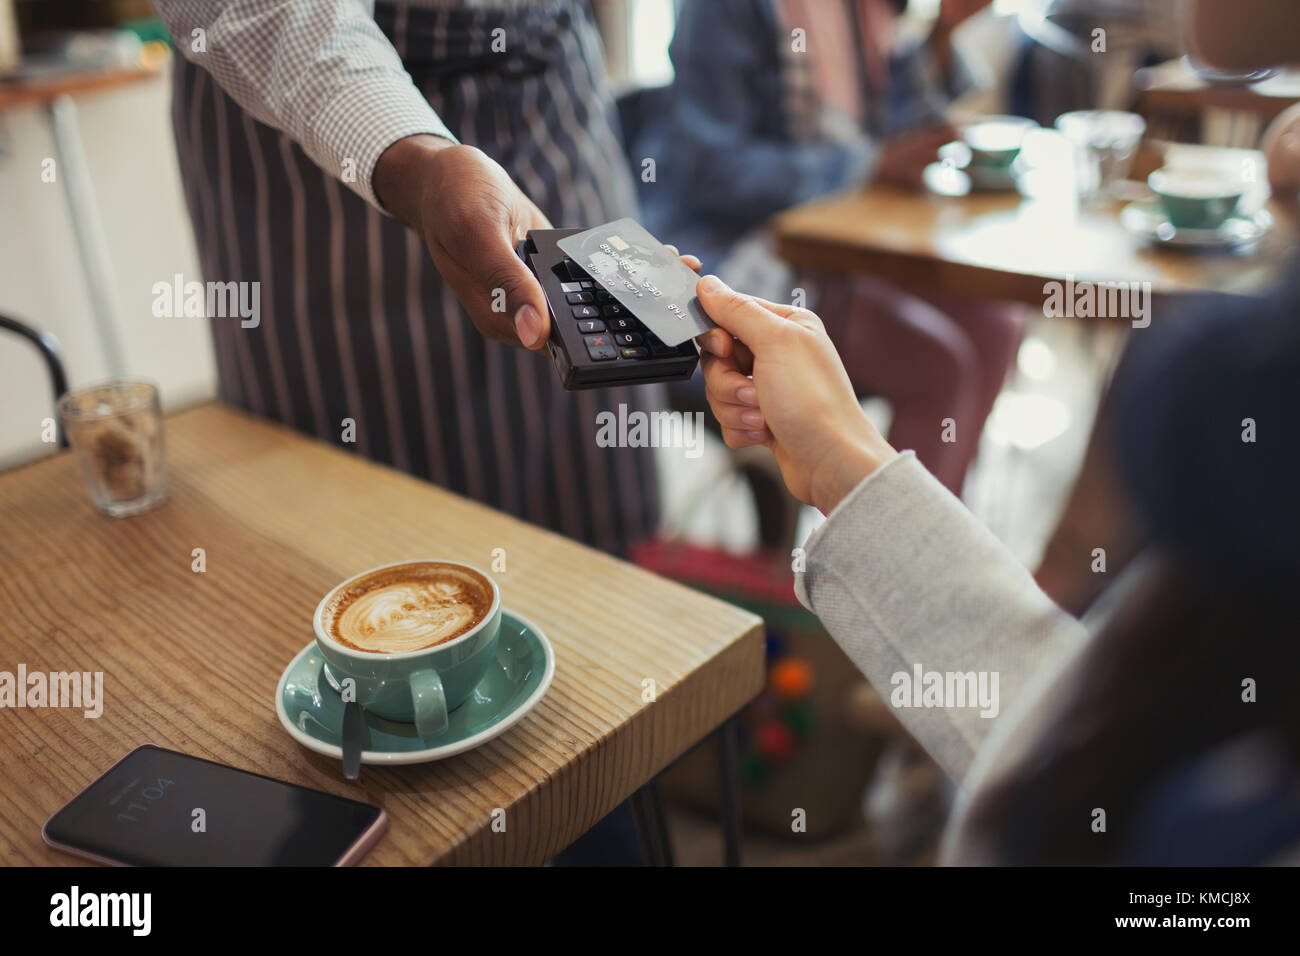 Cliente con tarjeta de crédito que paga a trabajador con pago sin contacto en café Foto de stock